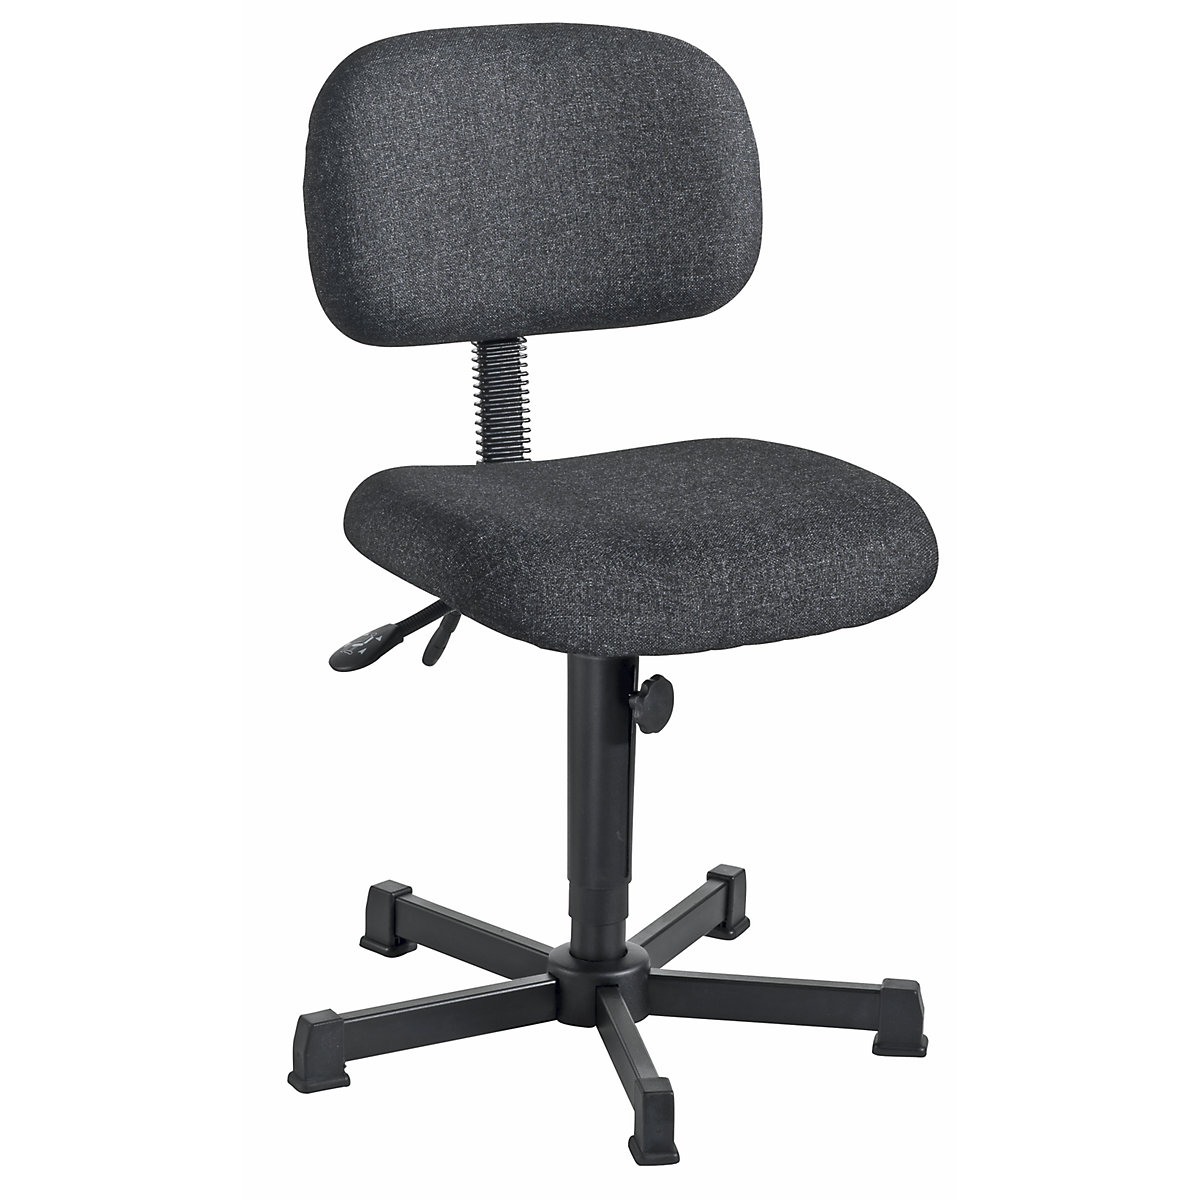 Pracovní otočná židle s přestavováním výšky pomocí klínové drážky – meychair